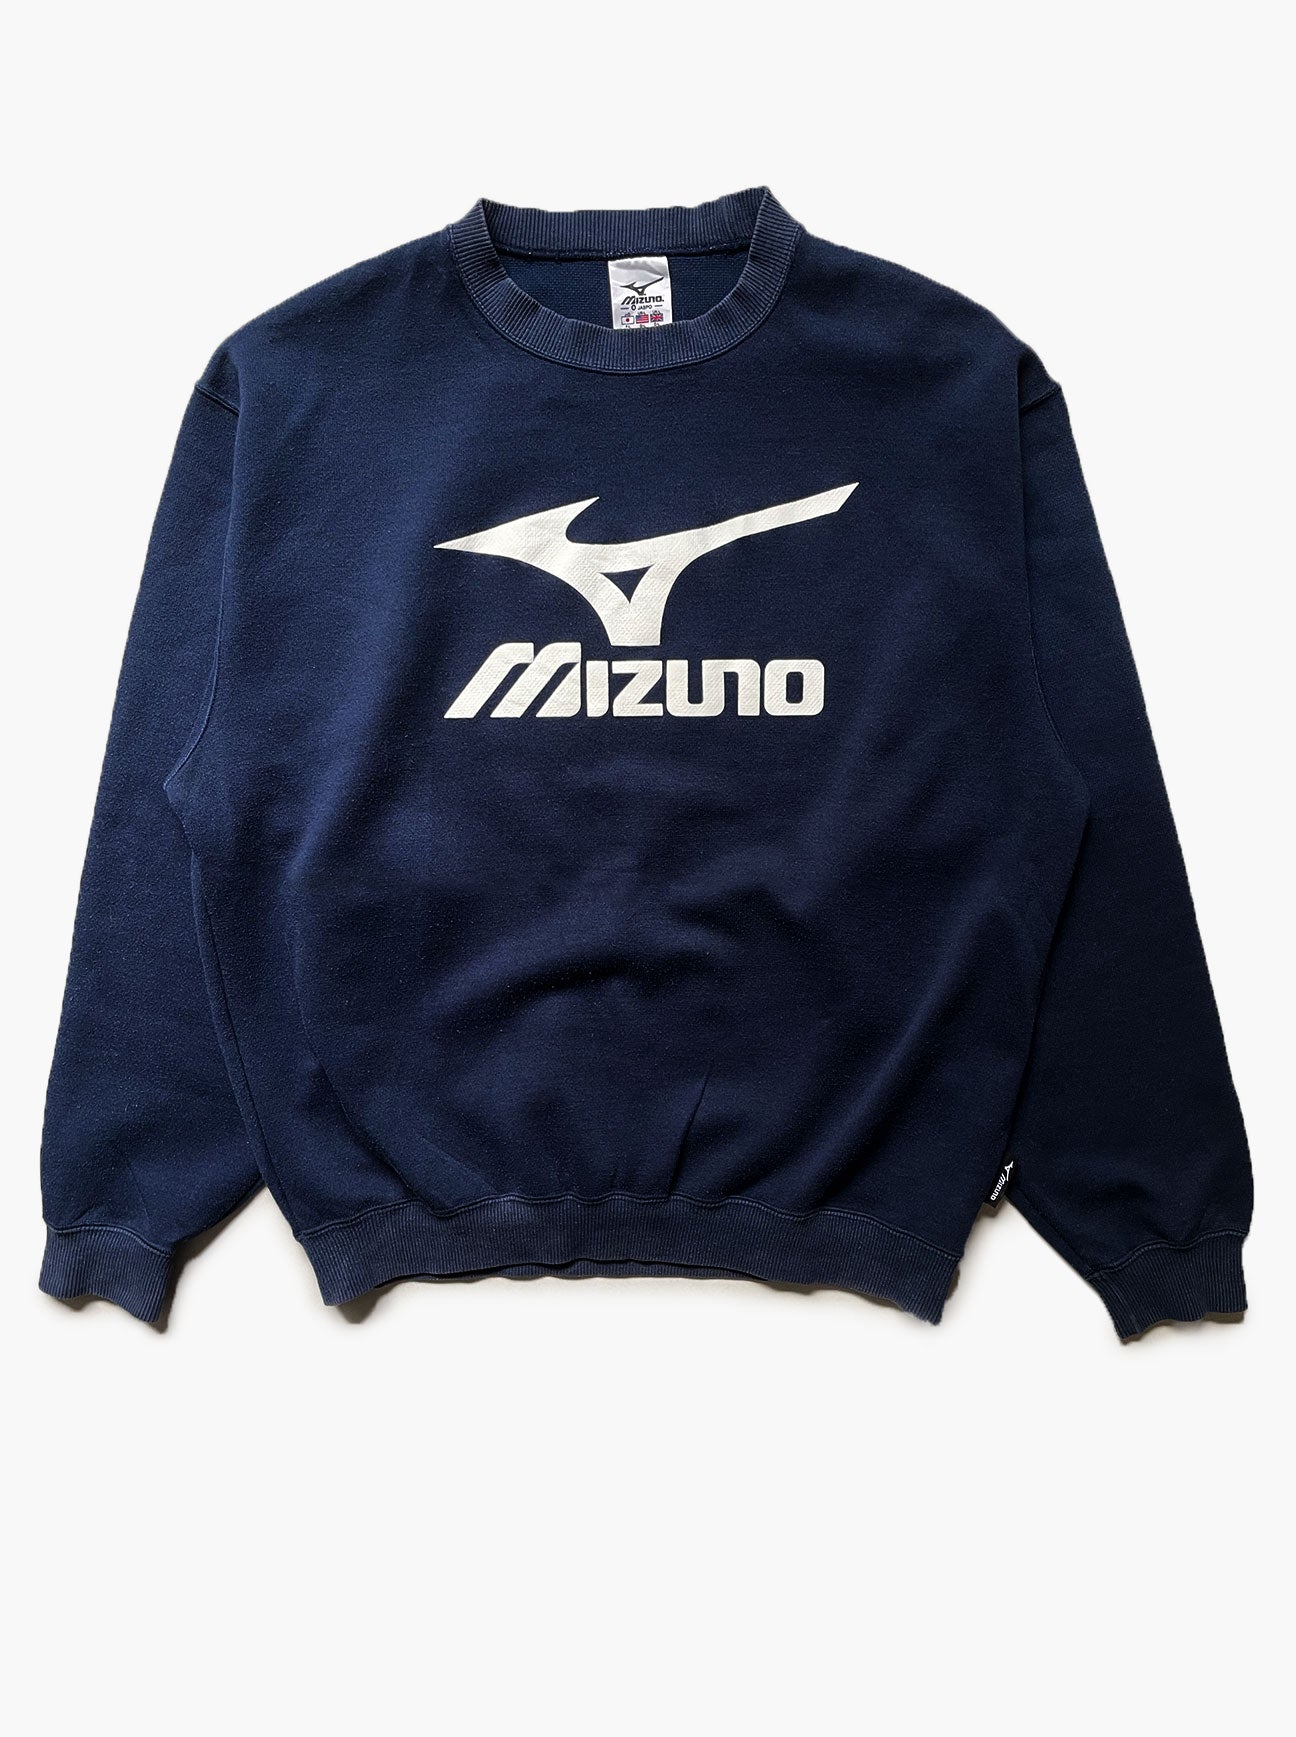 Vintage Mizuno crewneck sweatshirt